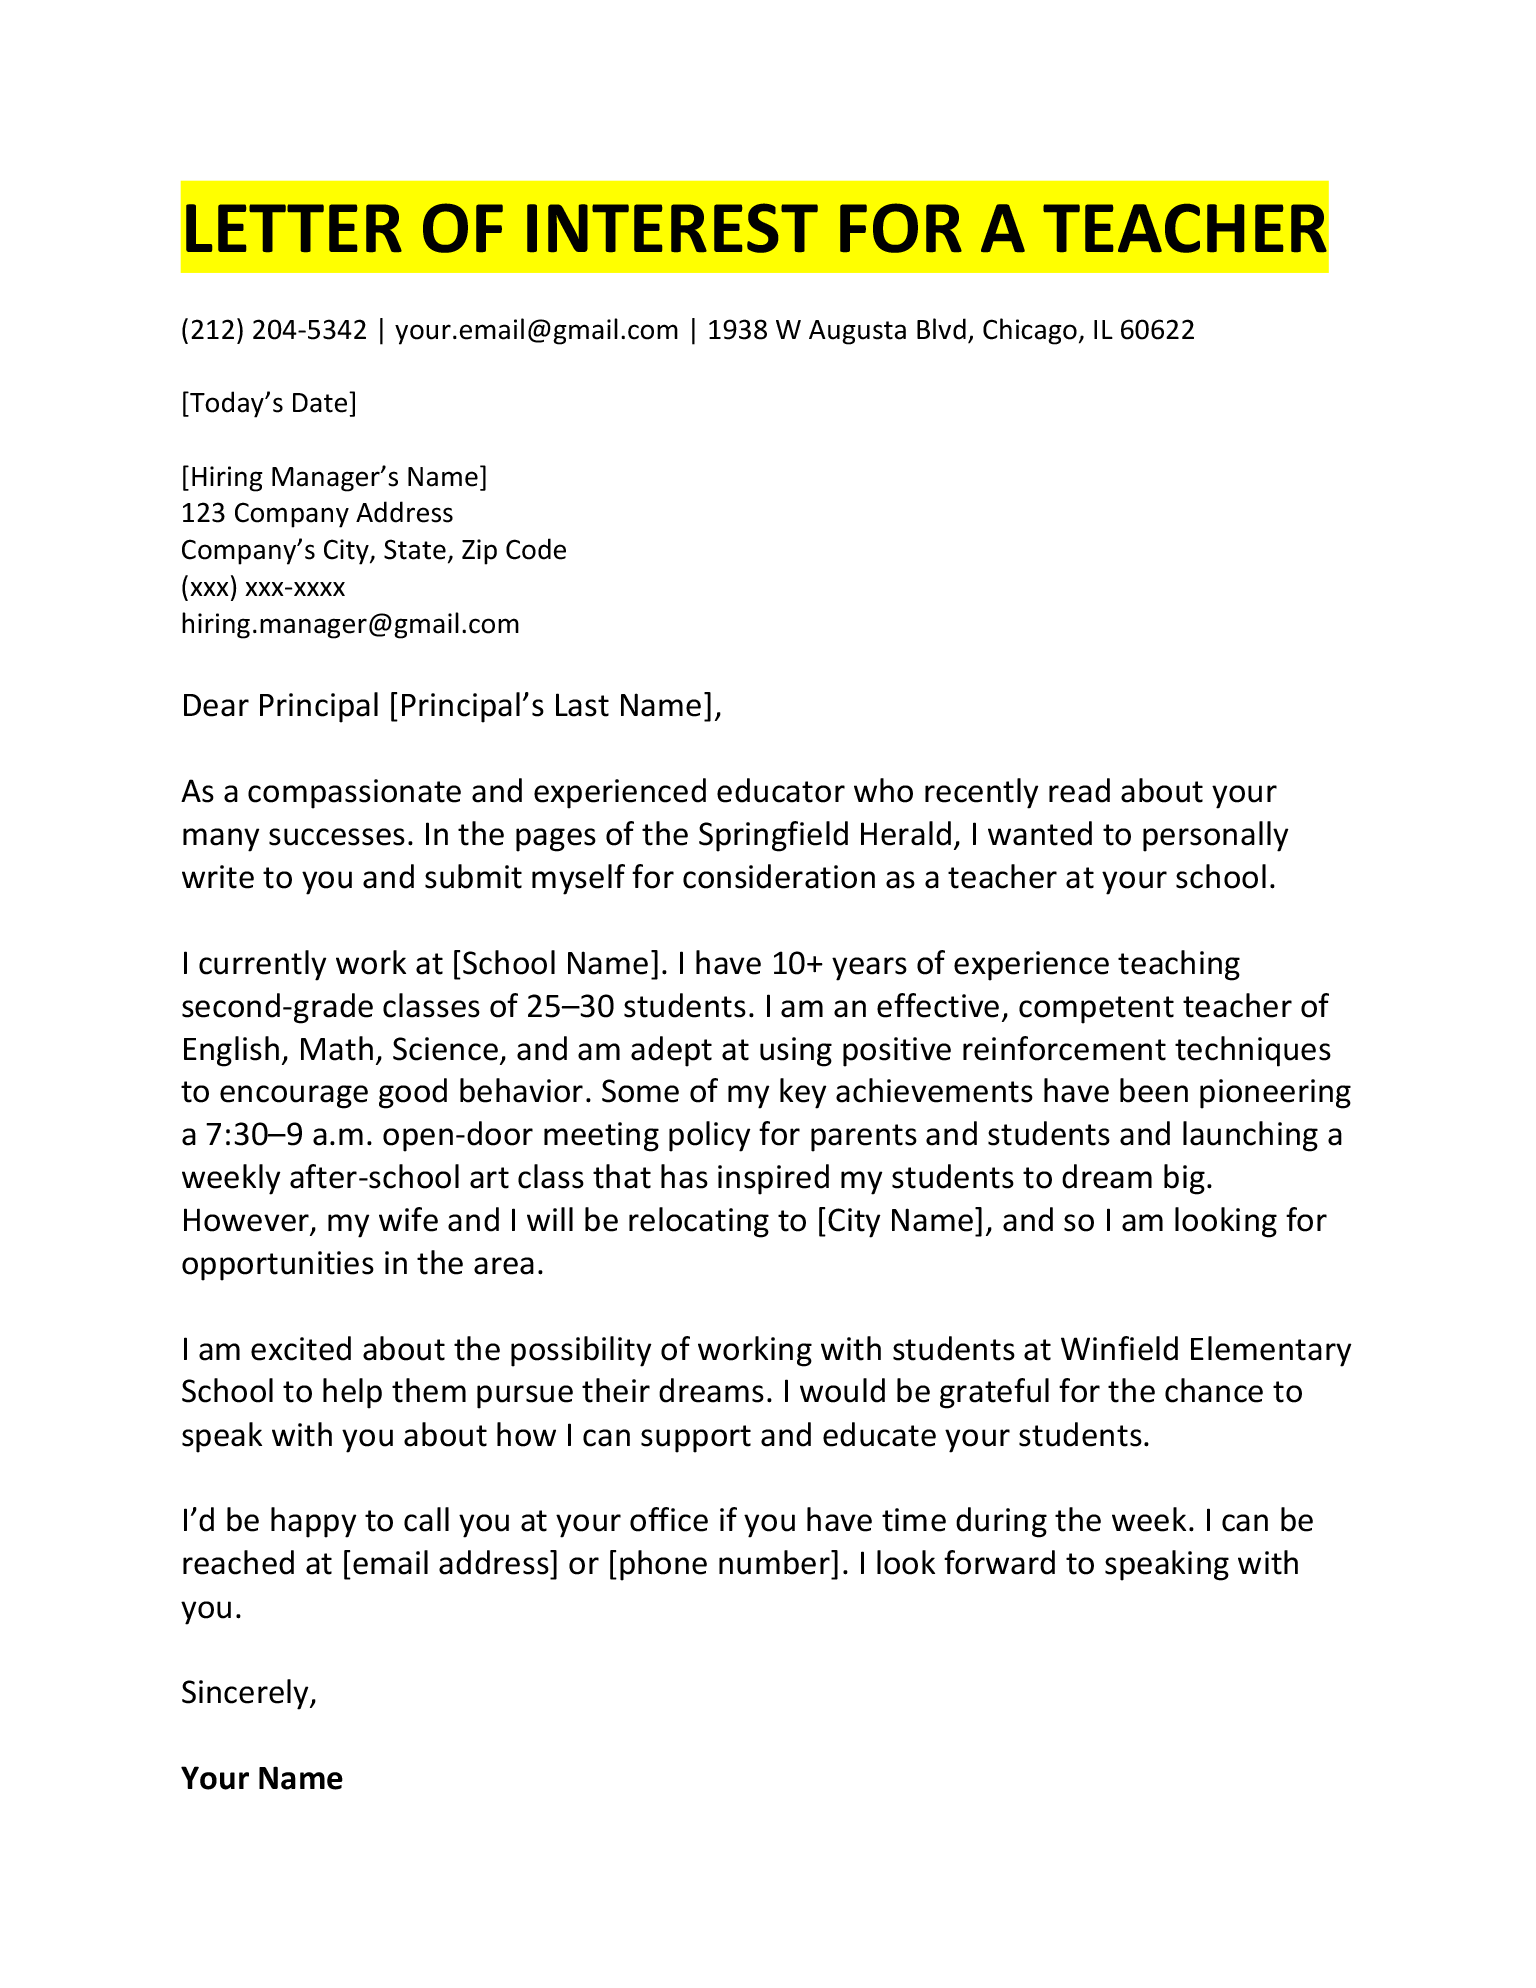 Exemple de lettre d'intérêt pour un enseignant.